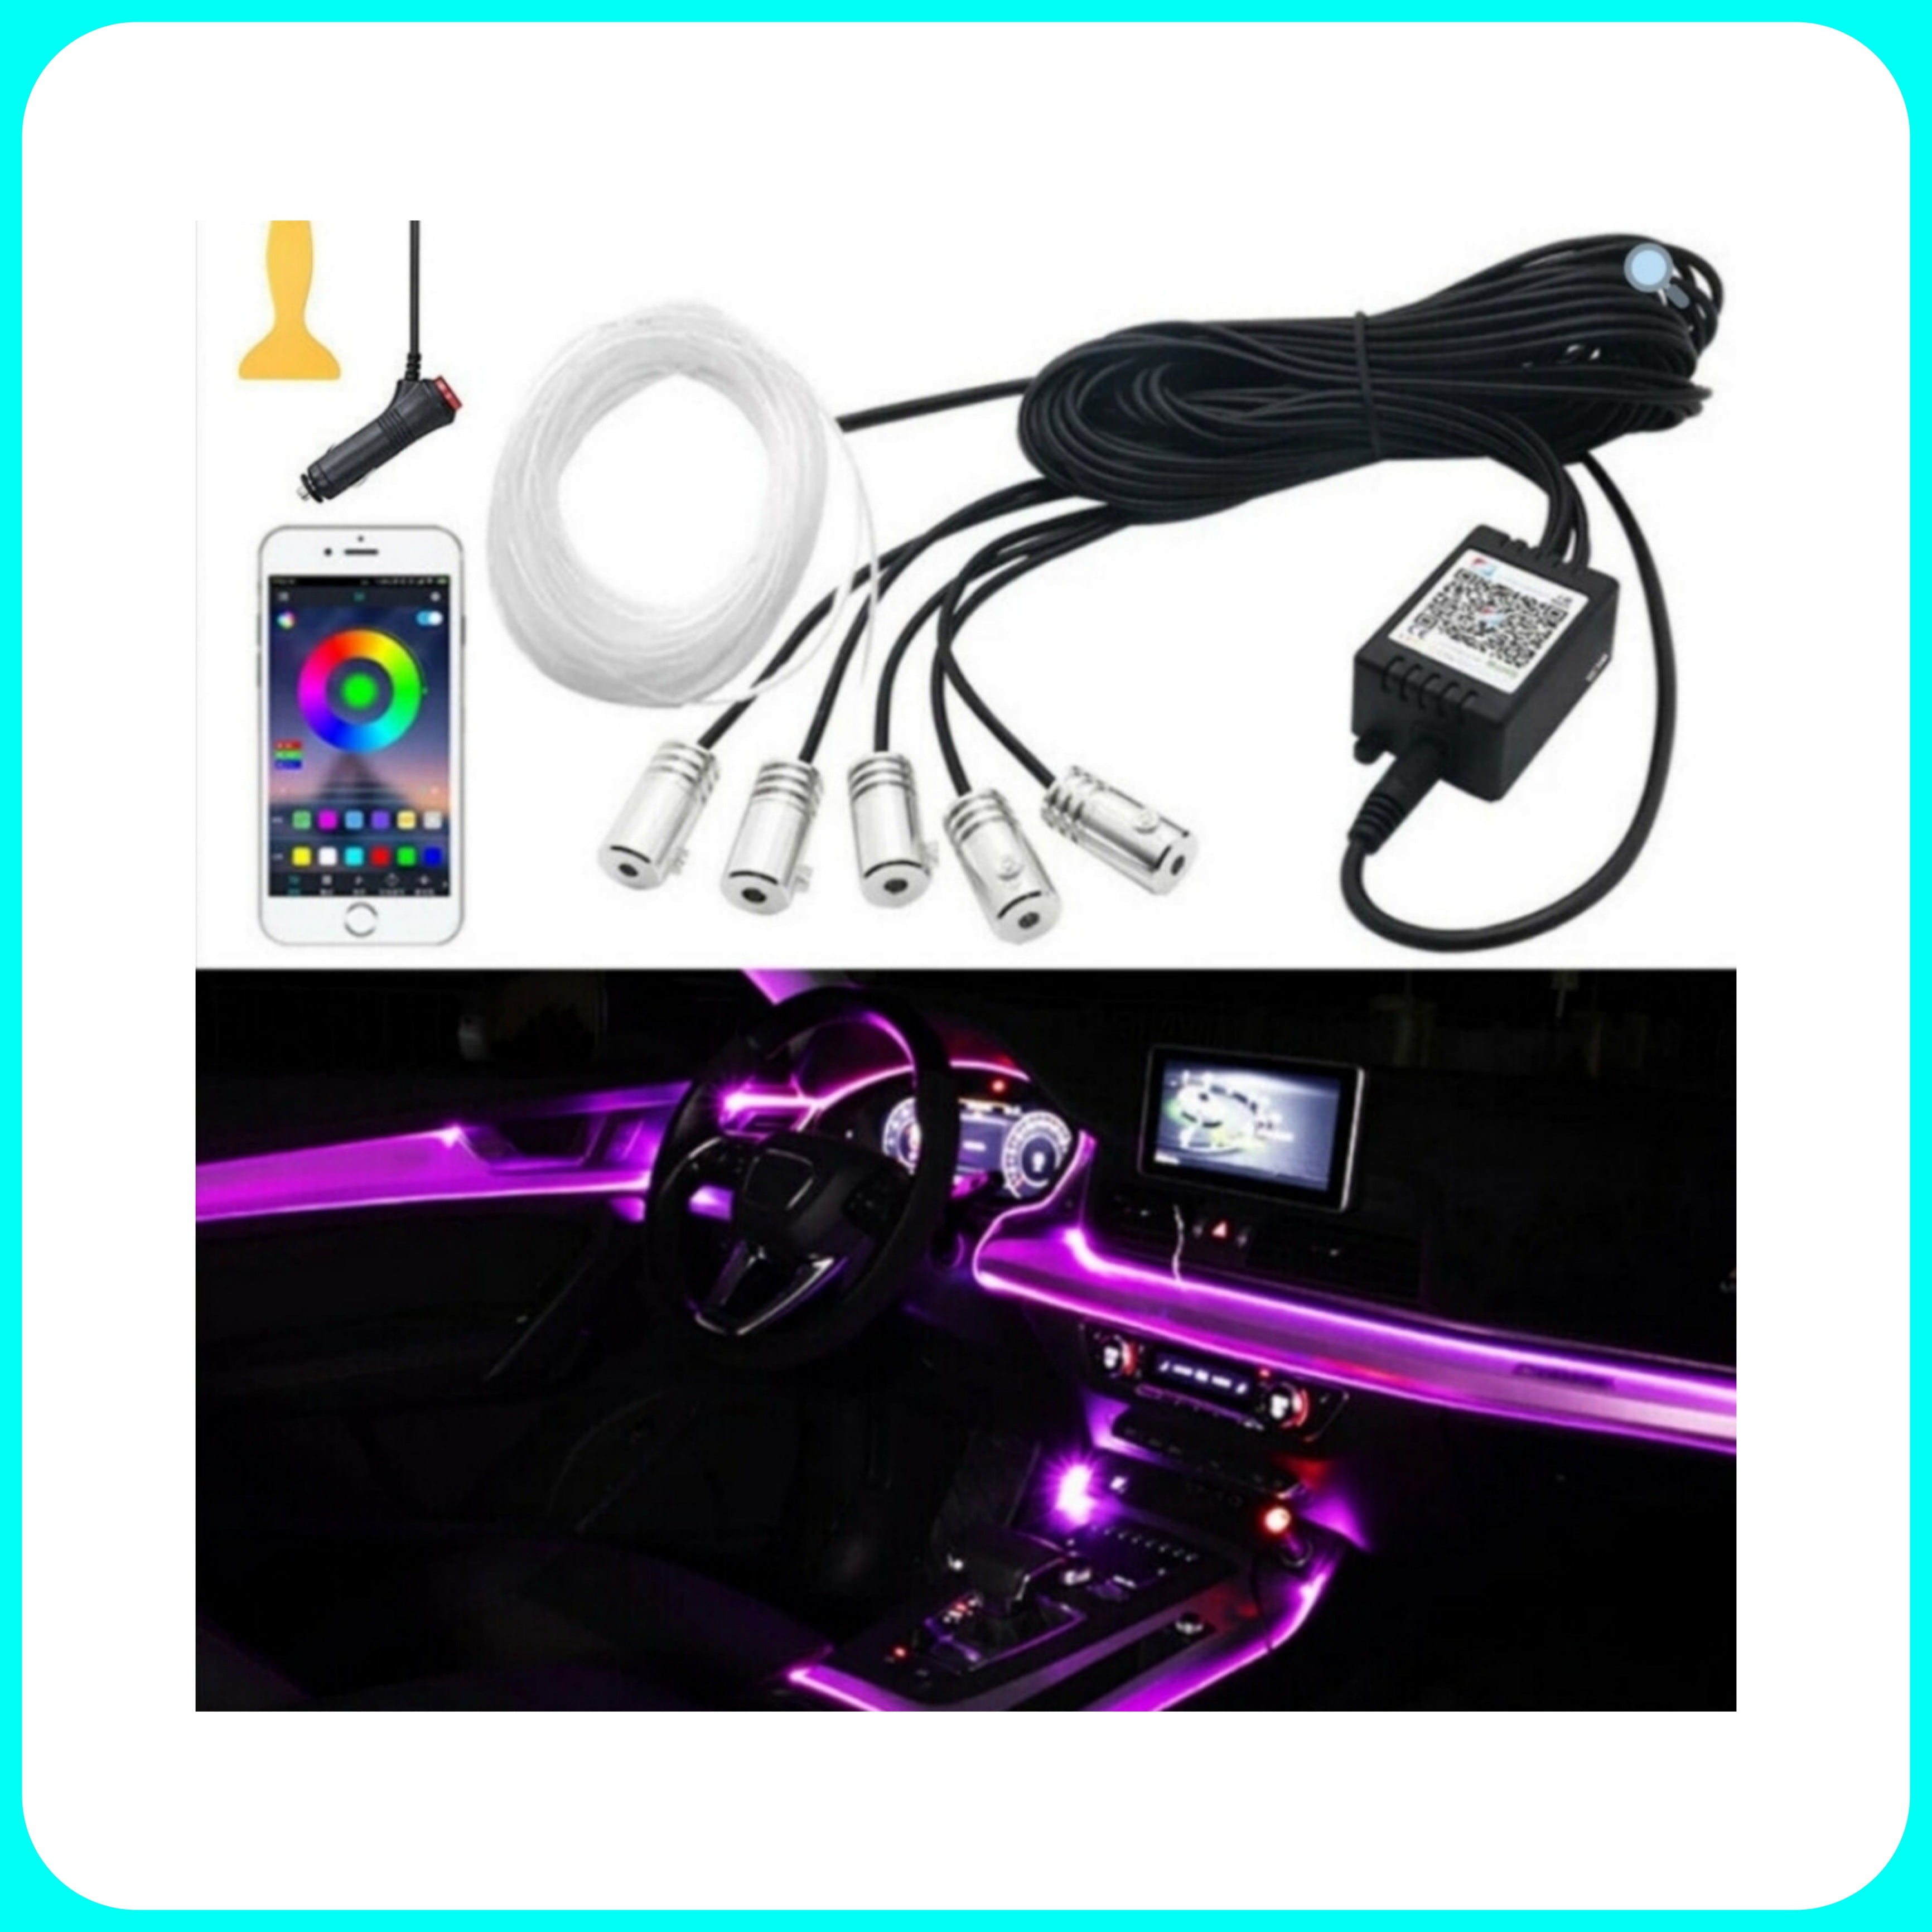 Luci LED Ambiente AUTO - Ambient Light, Comando App, in Fibra ottica 6M, RGB, Comando Musicale, Universale, 12V.